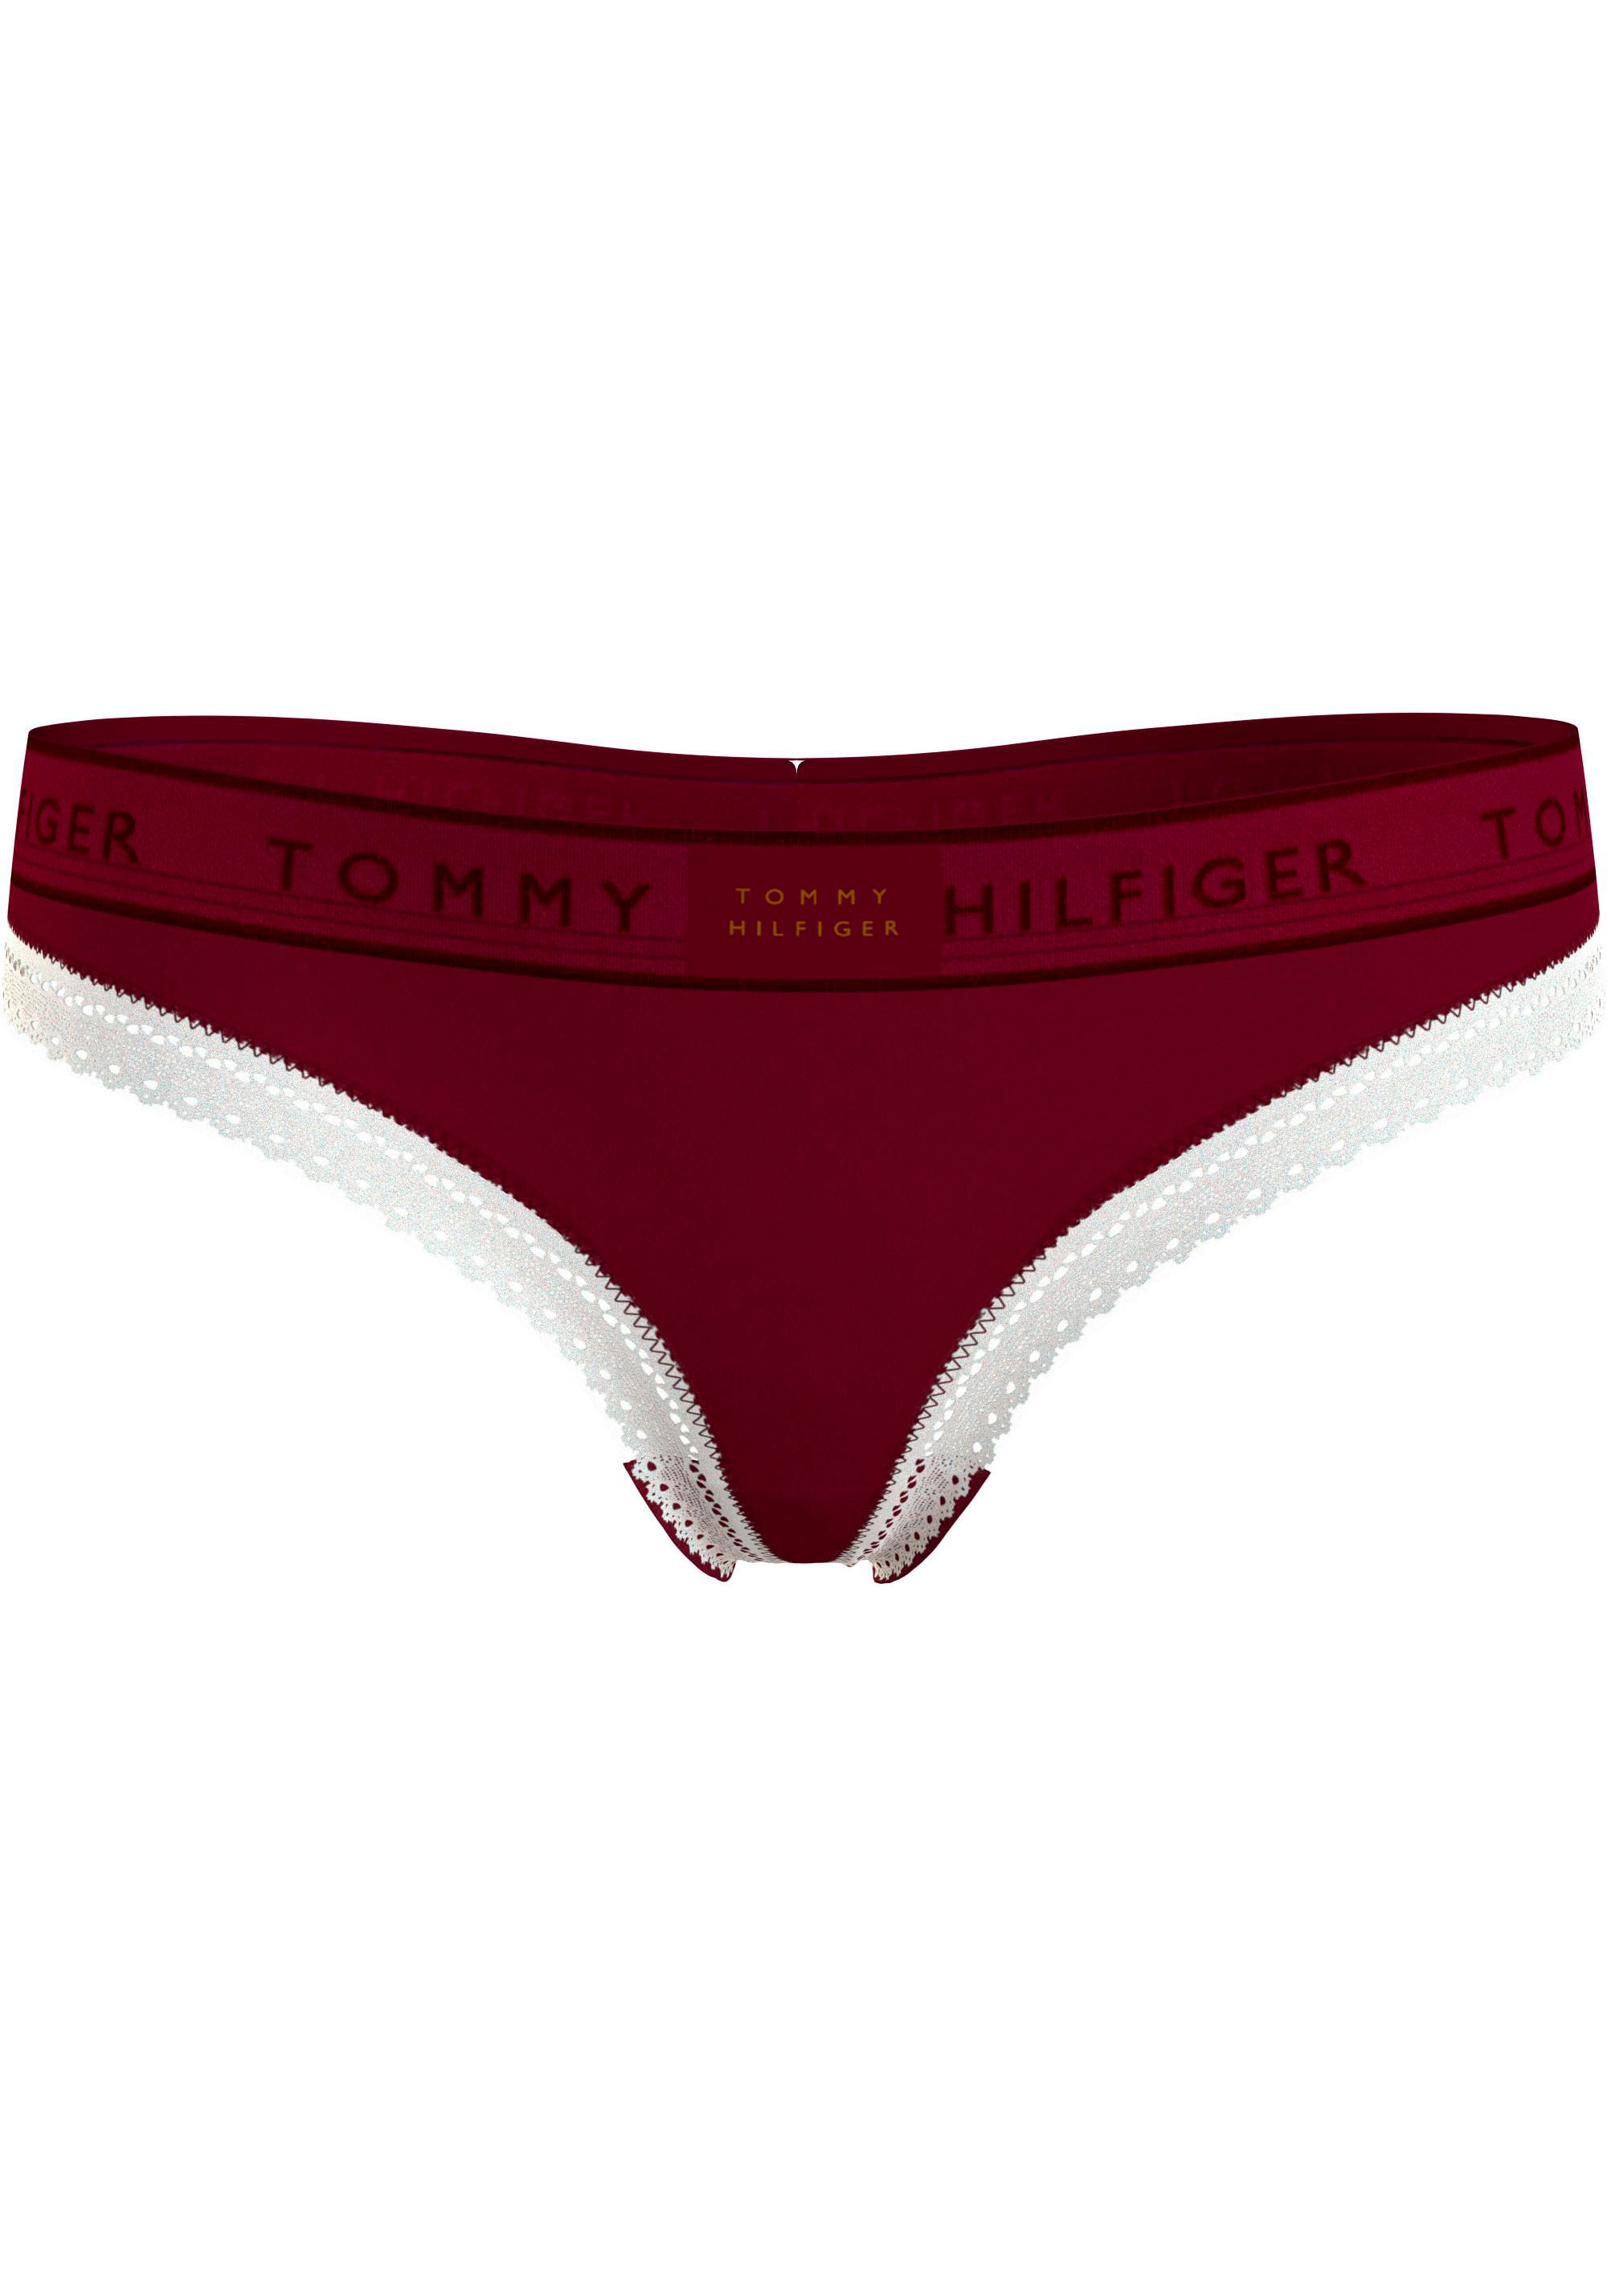 Shop (EXT T-String Tommy Jelmoli-Online im ordern »THONG Logobund mit SIZES)«, Hilfiger Hilfiger Tommy Underwear